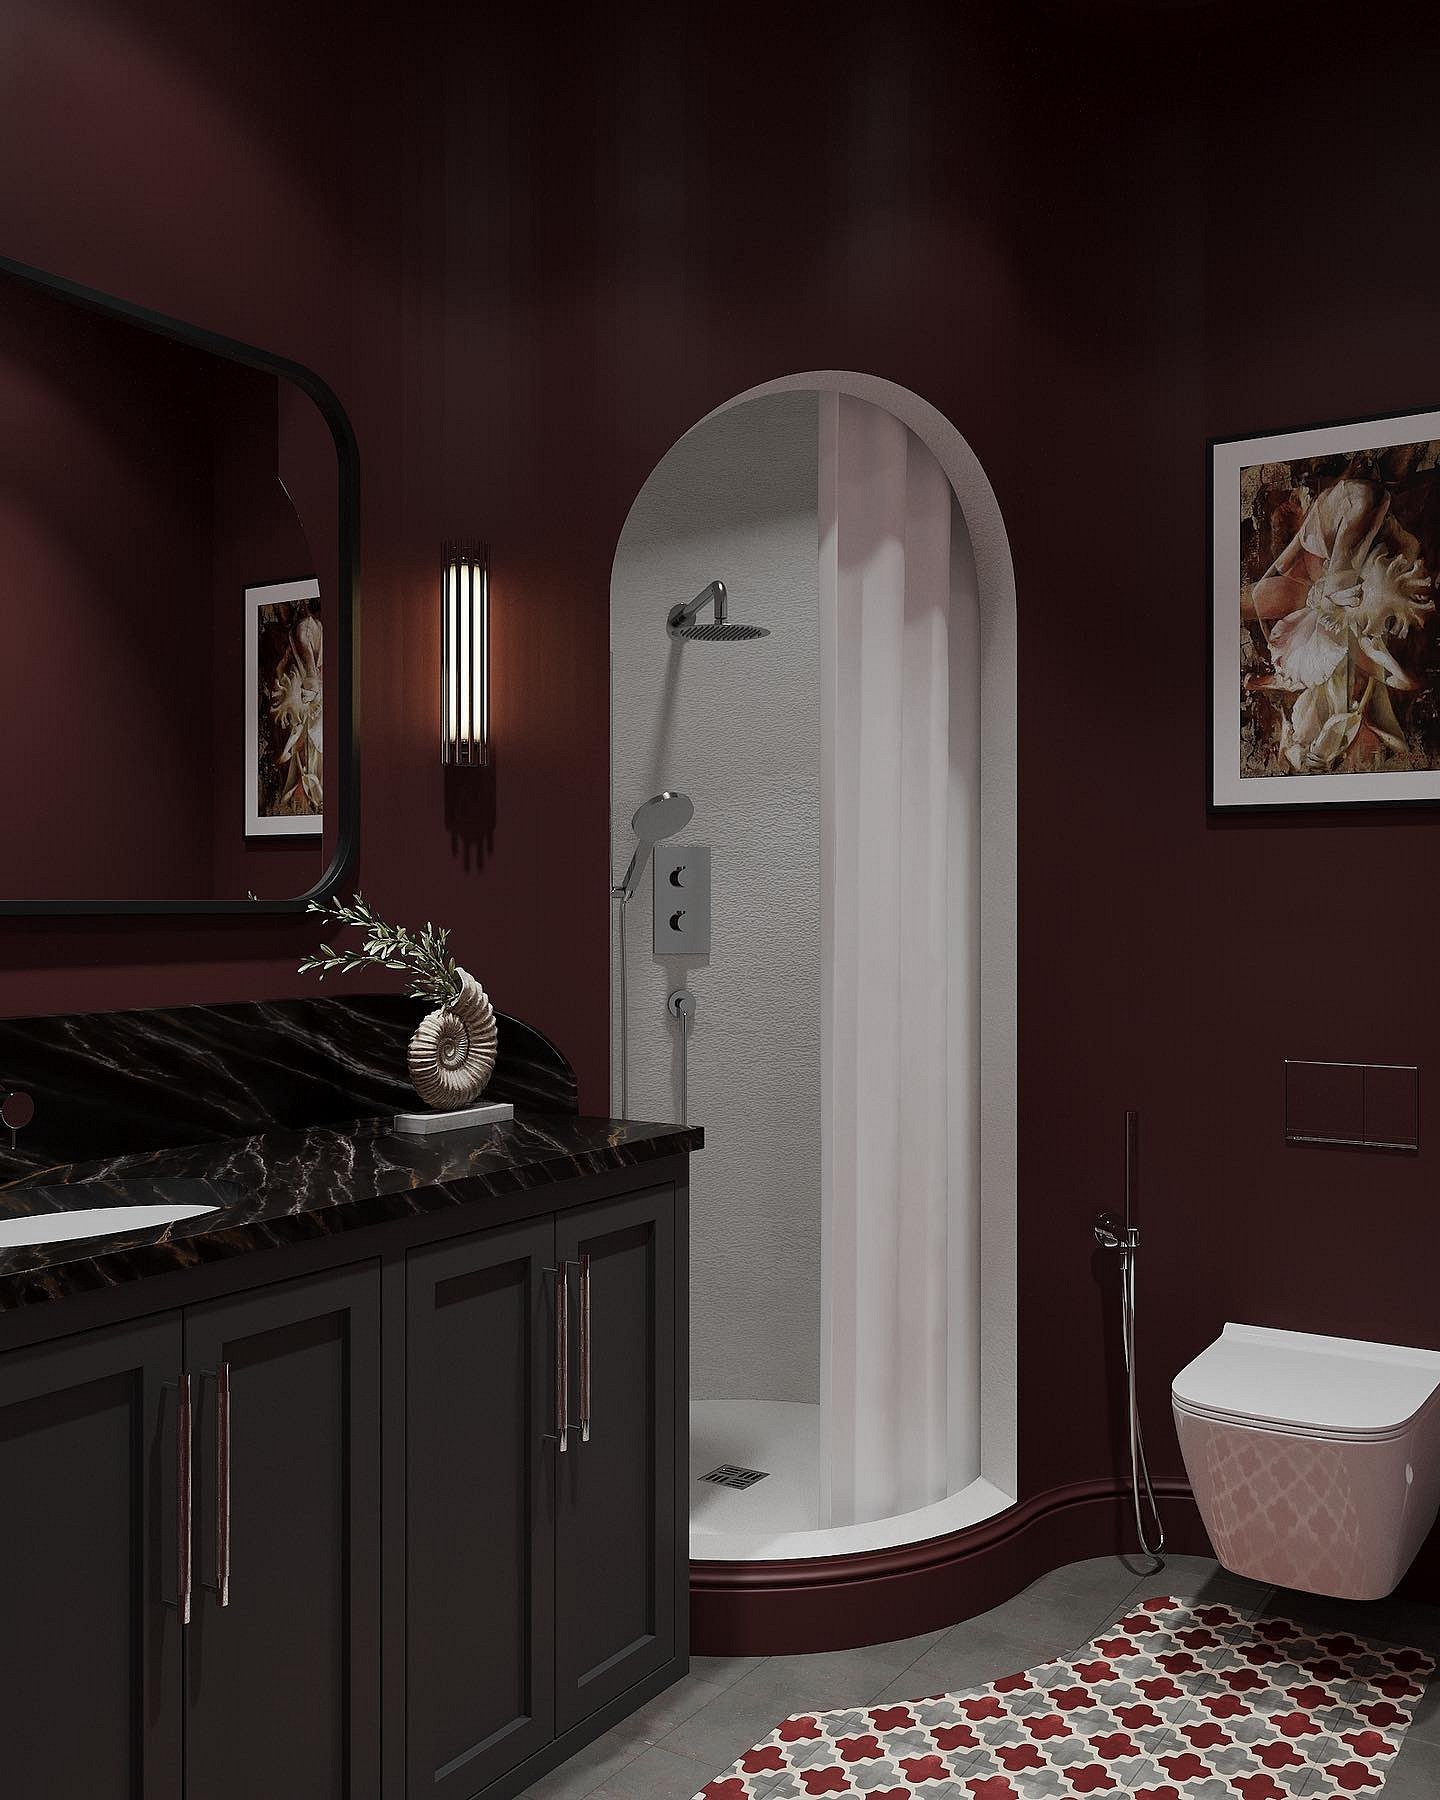 9 необычных решений для ванной комнаты из проектов дизайнеров2